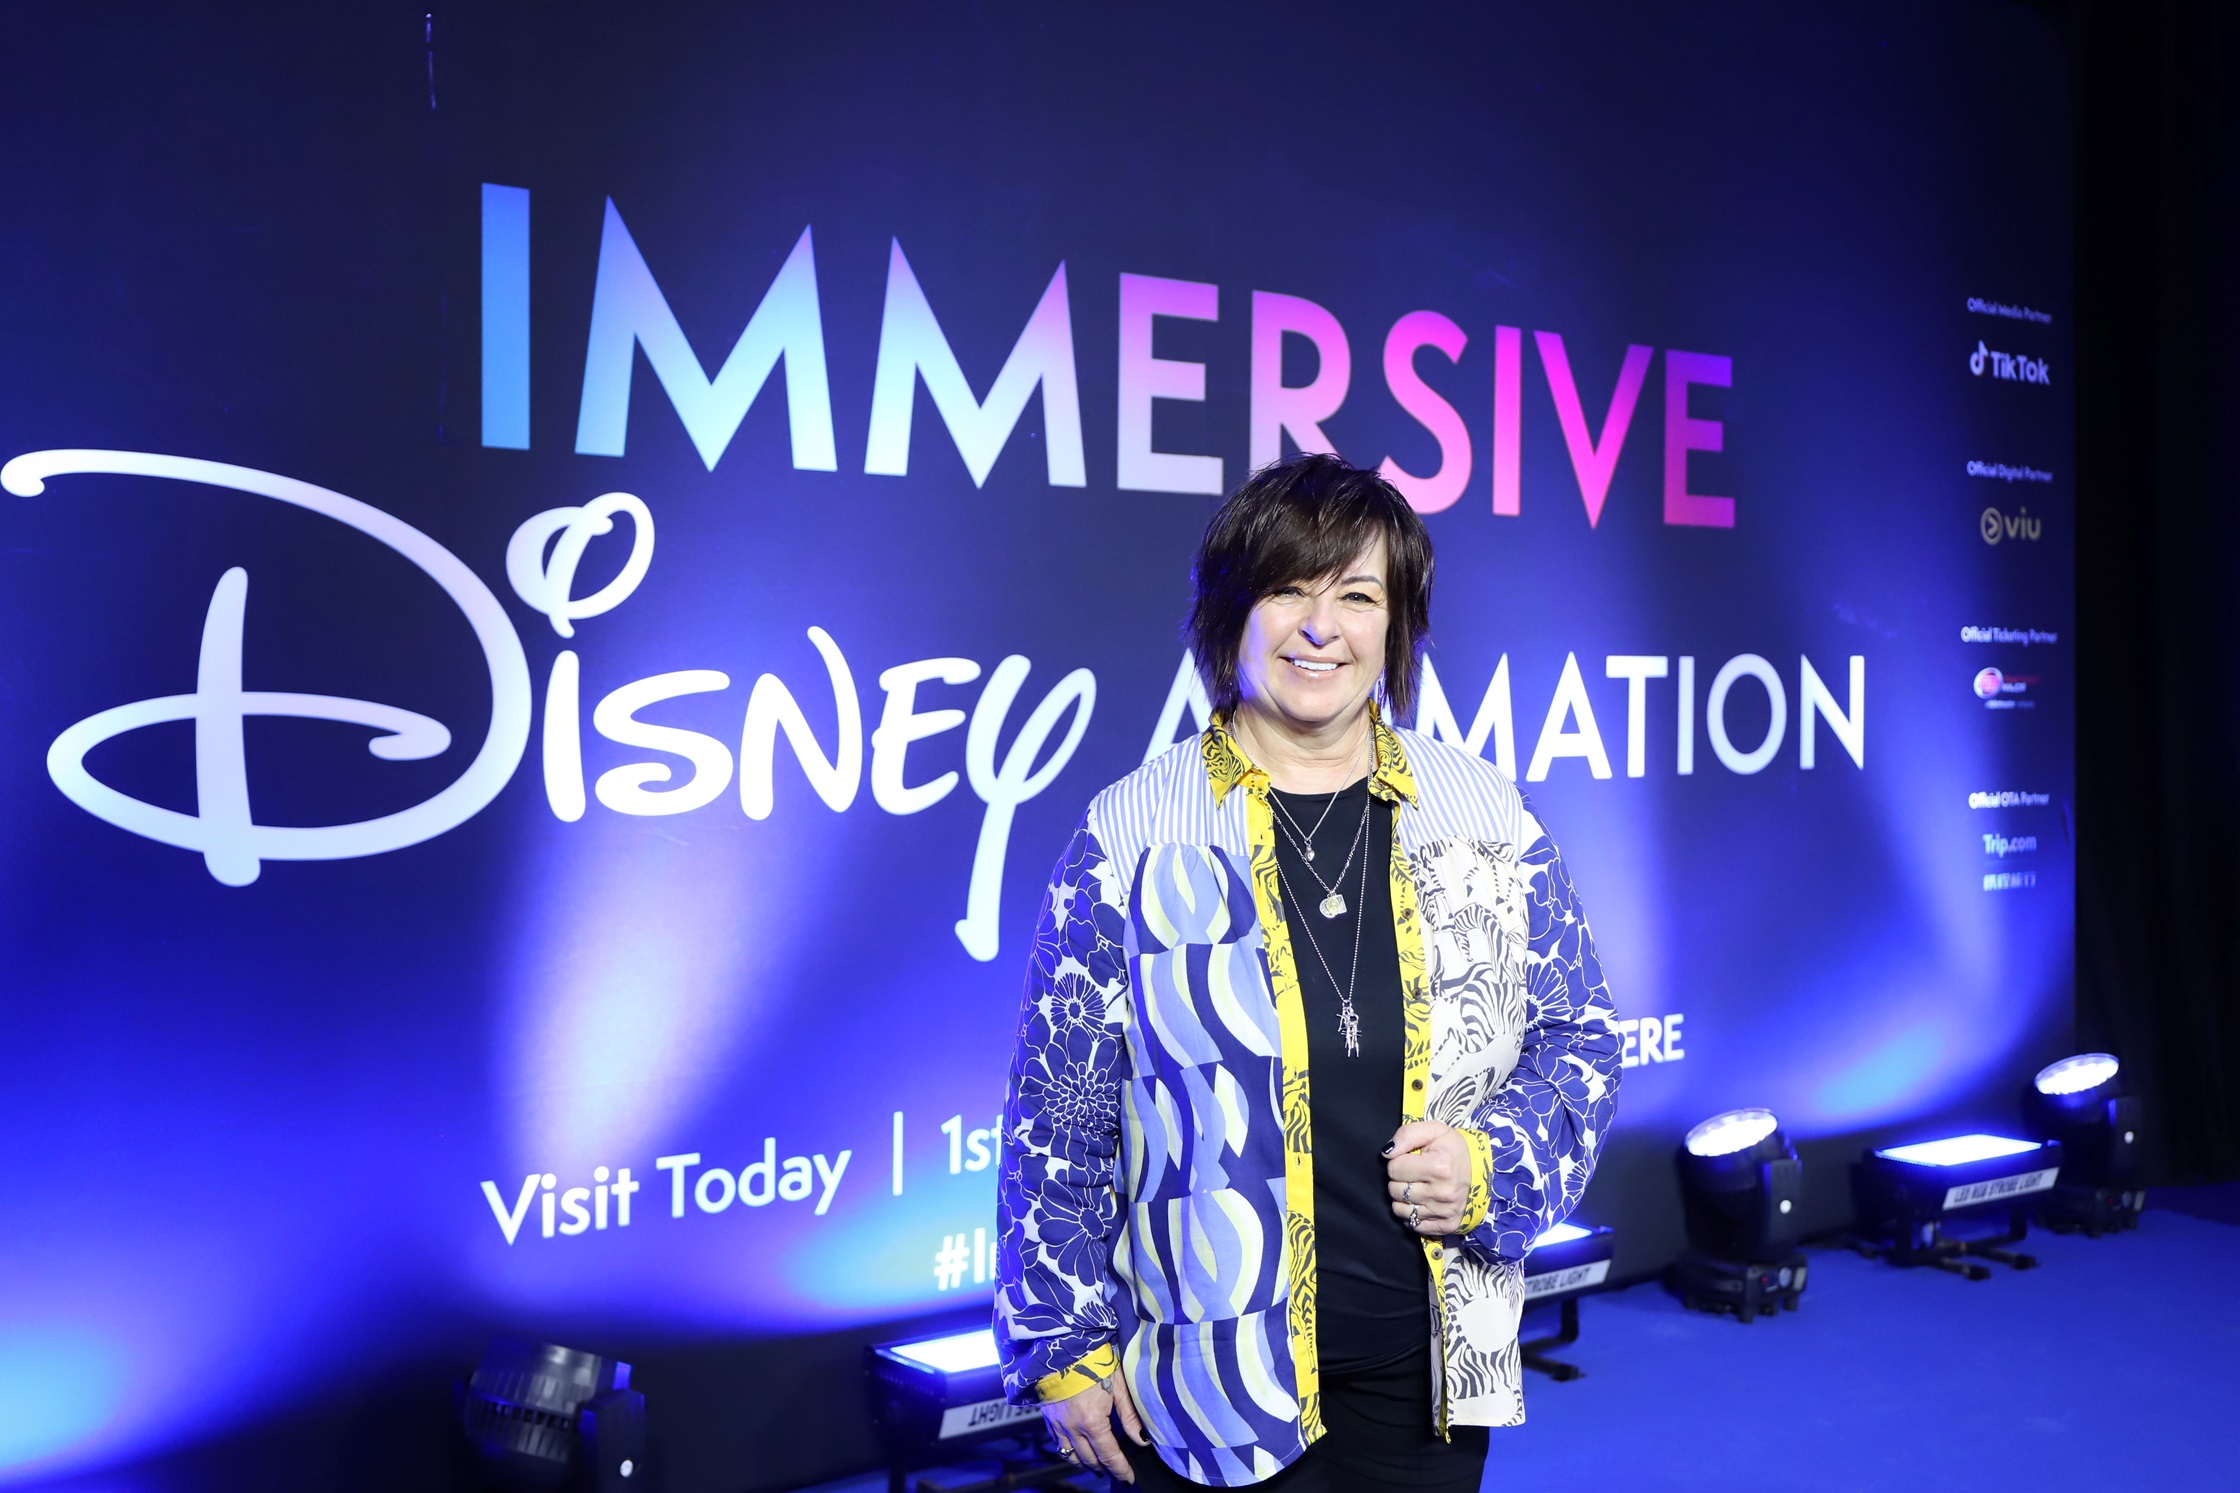 เปิดตัวนิทรรศการ Immersive Disney Animation สุดยิ่งใหญ่ประเทศไทย